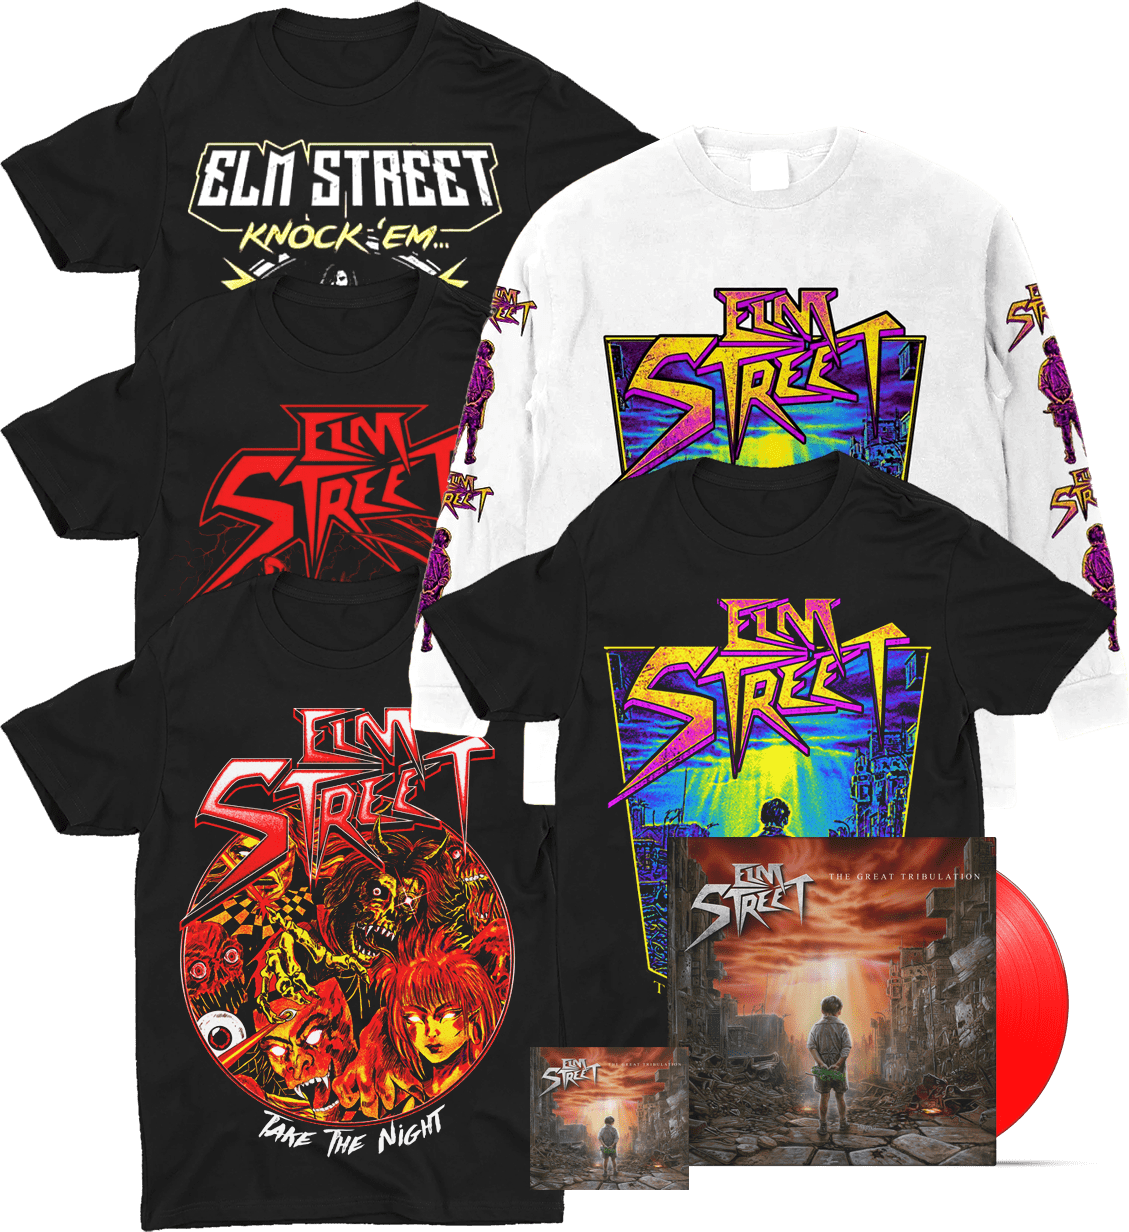 Elm Street band official merchandise